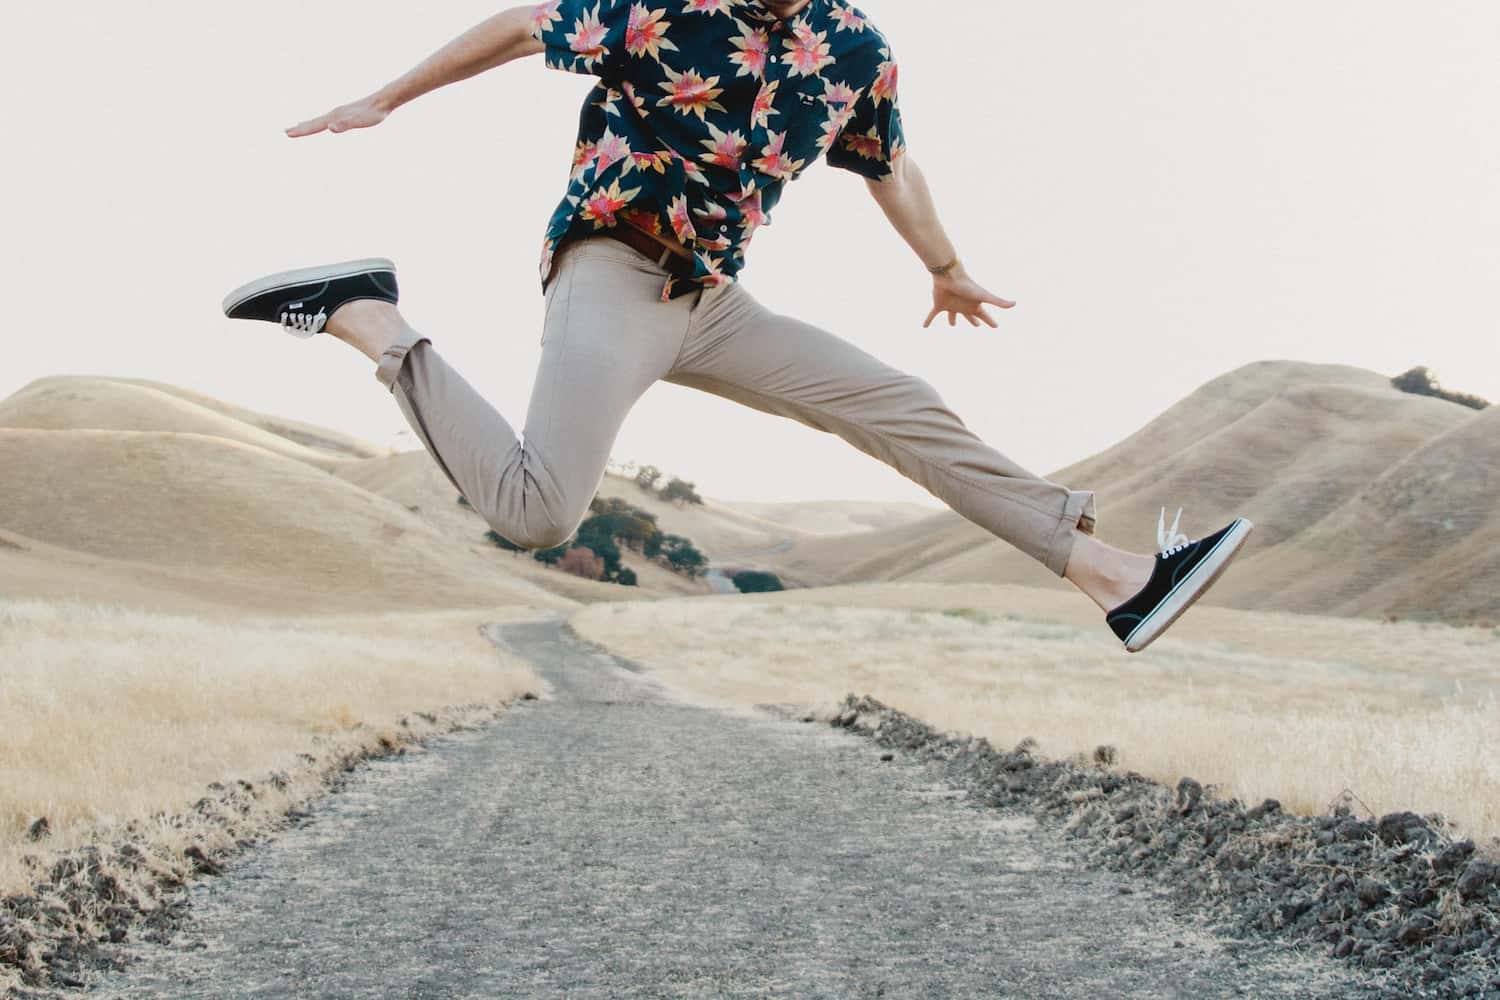 Guy jumping wearing chinos